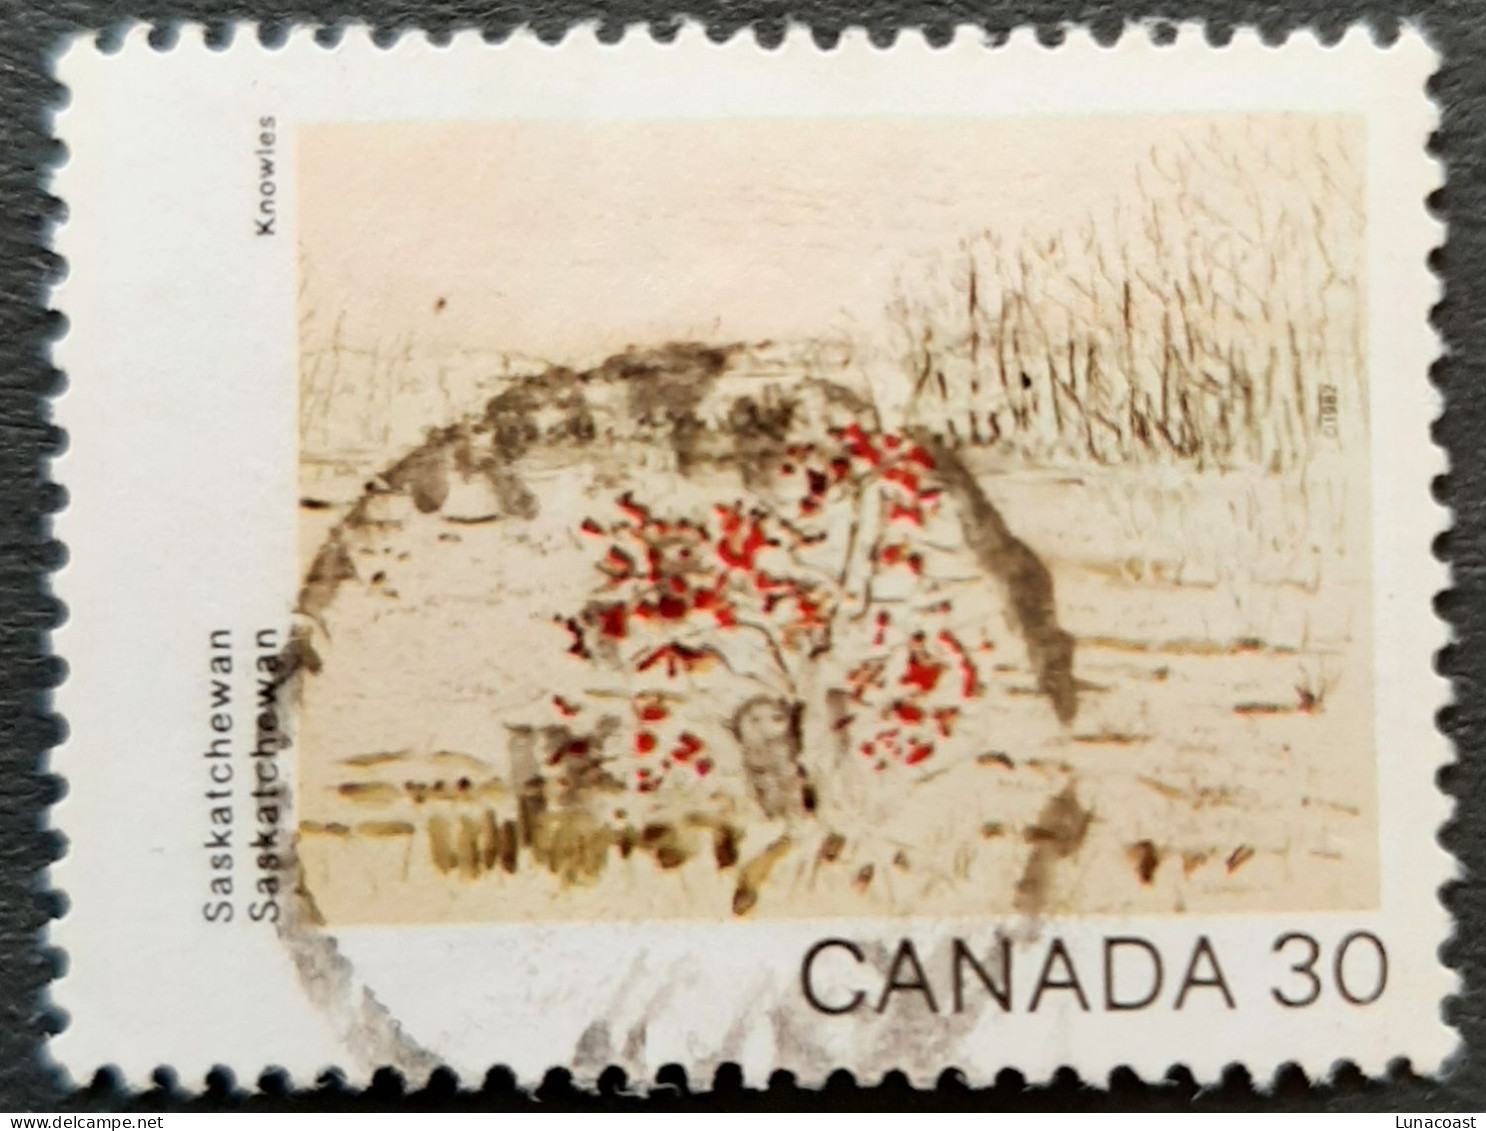 Canada 1982  USED  Sc961,  30c Canada Day, Saskatchewan - Oblitérés